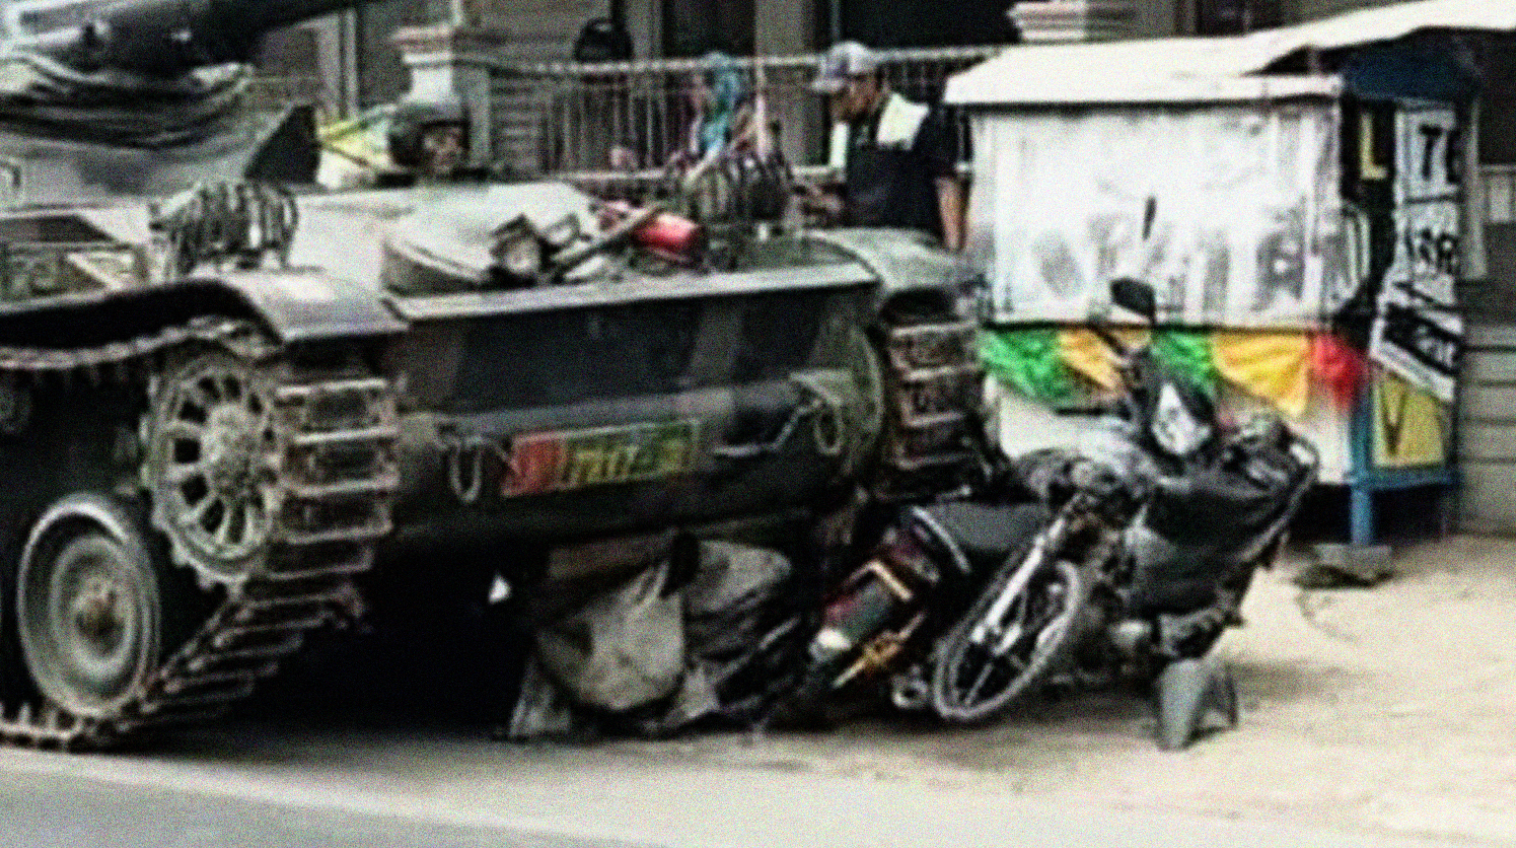 Tank milik Batalyon Kavaleri Siliwangi saat menabrak motor dan gerobak di Kabupetan Bandung Kamis kemarin harus diusut tuntas. (Foto:Istimewa)